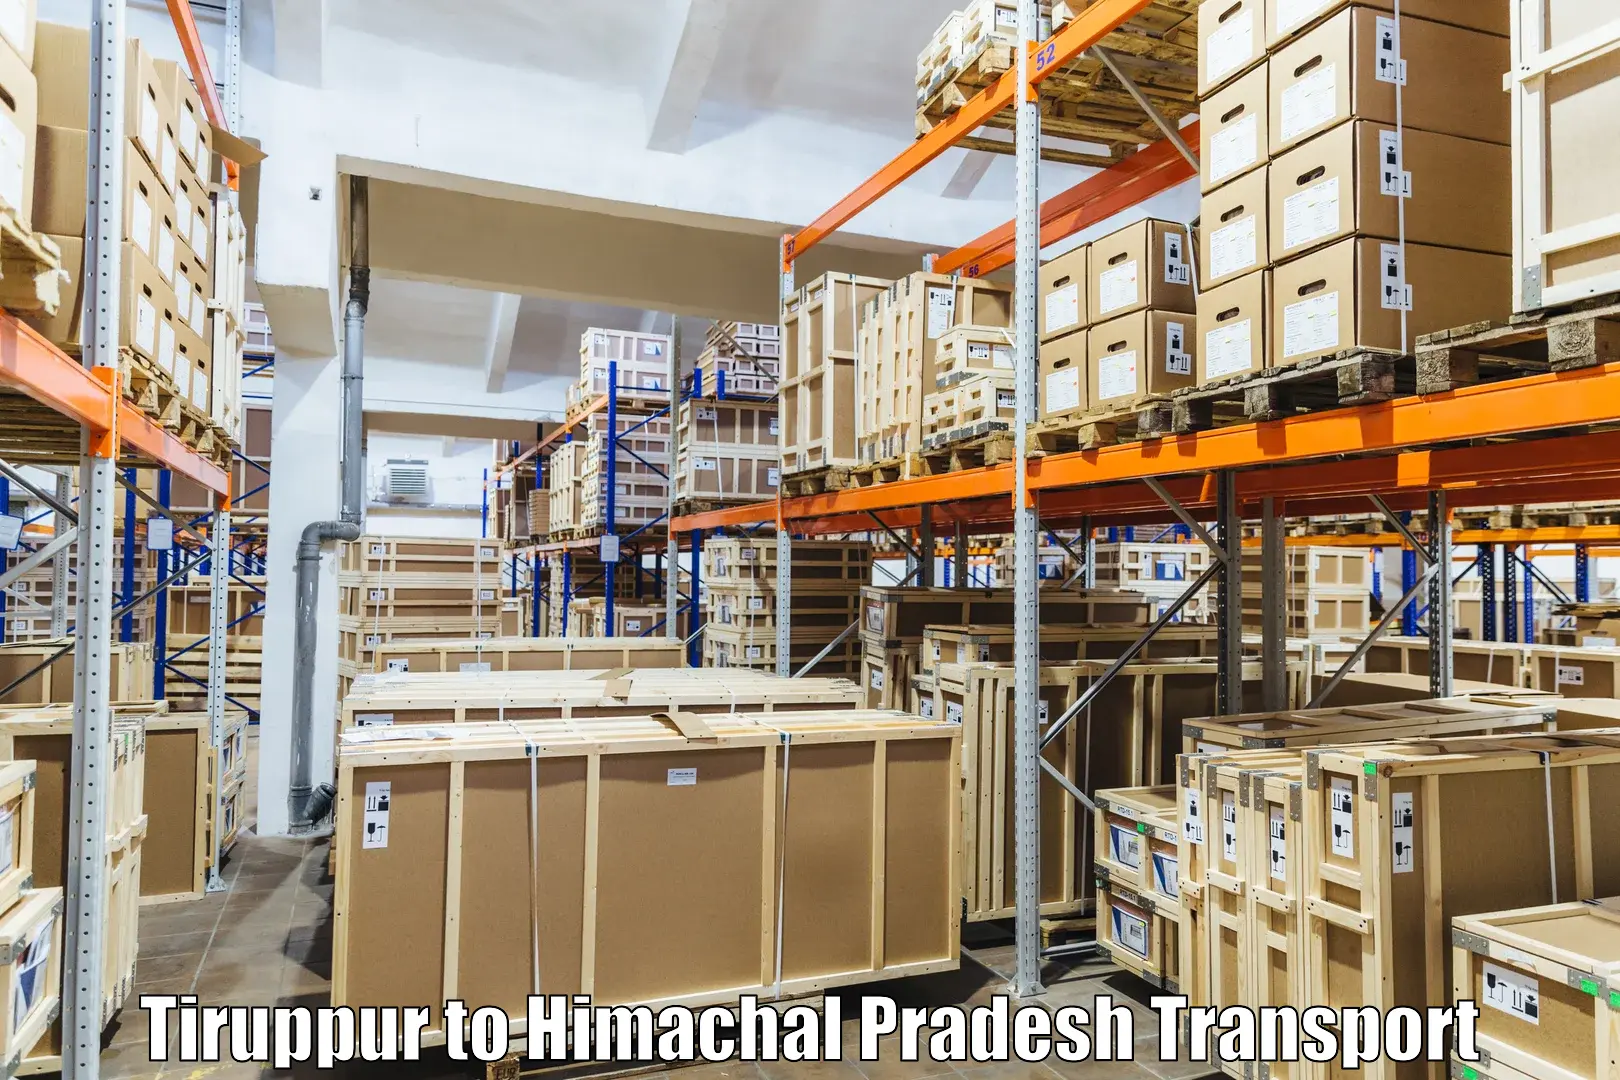 Interstate transport services Tiruppur to Kinnaur